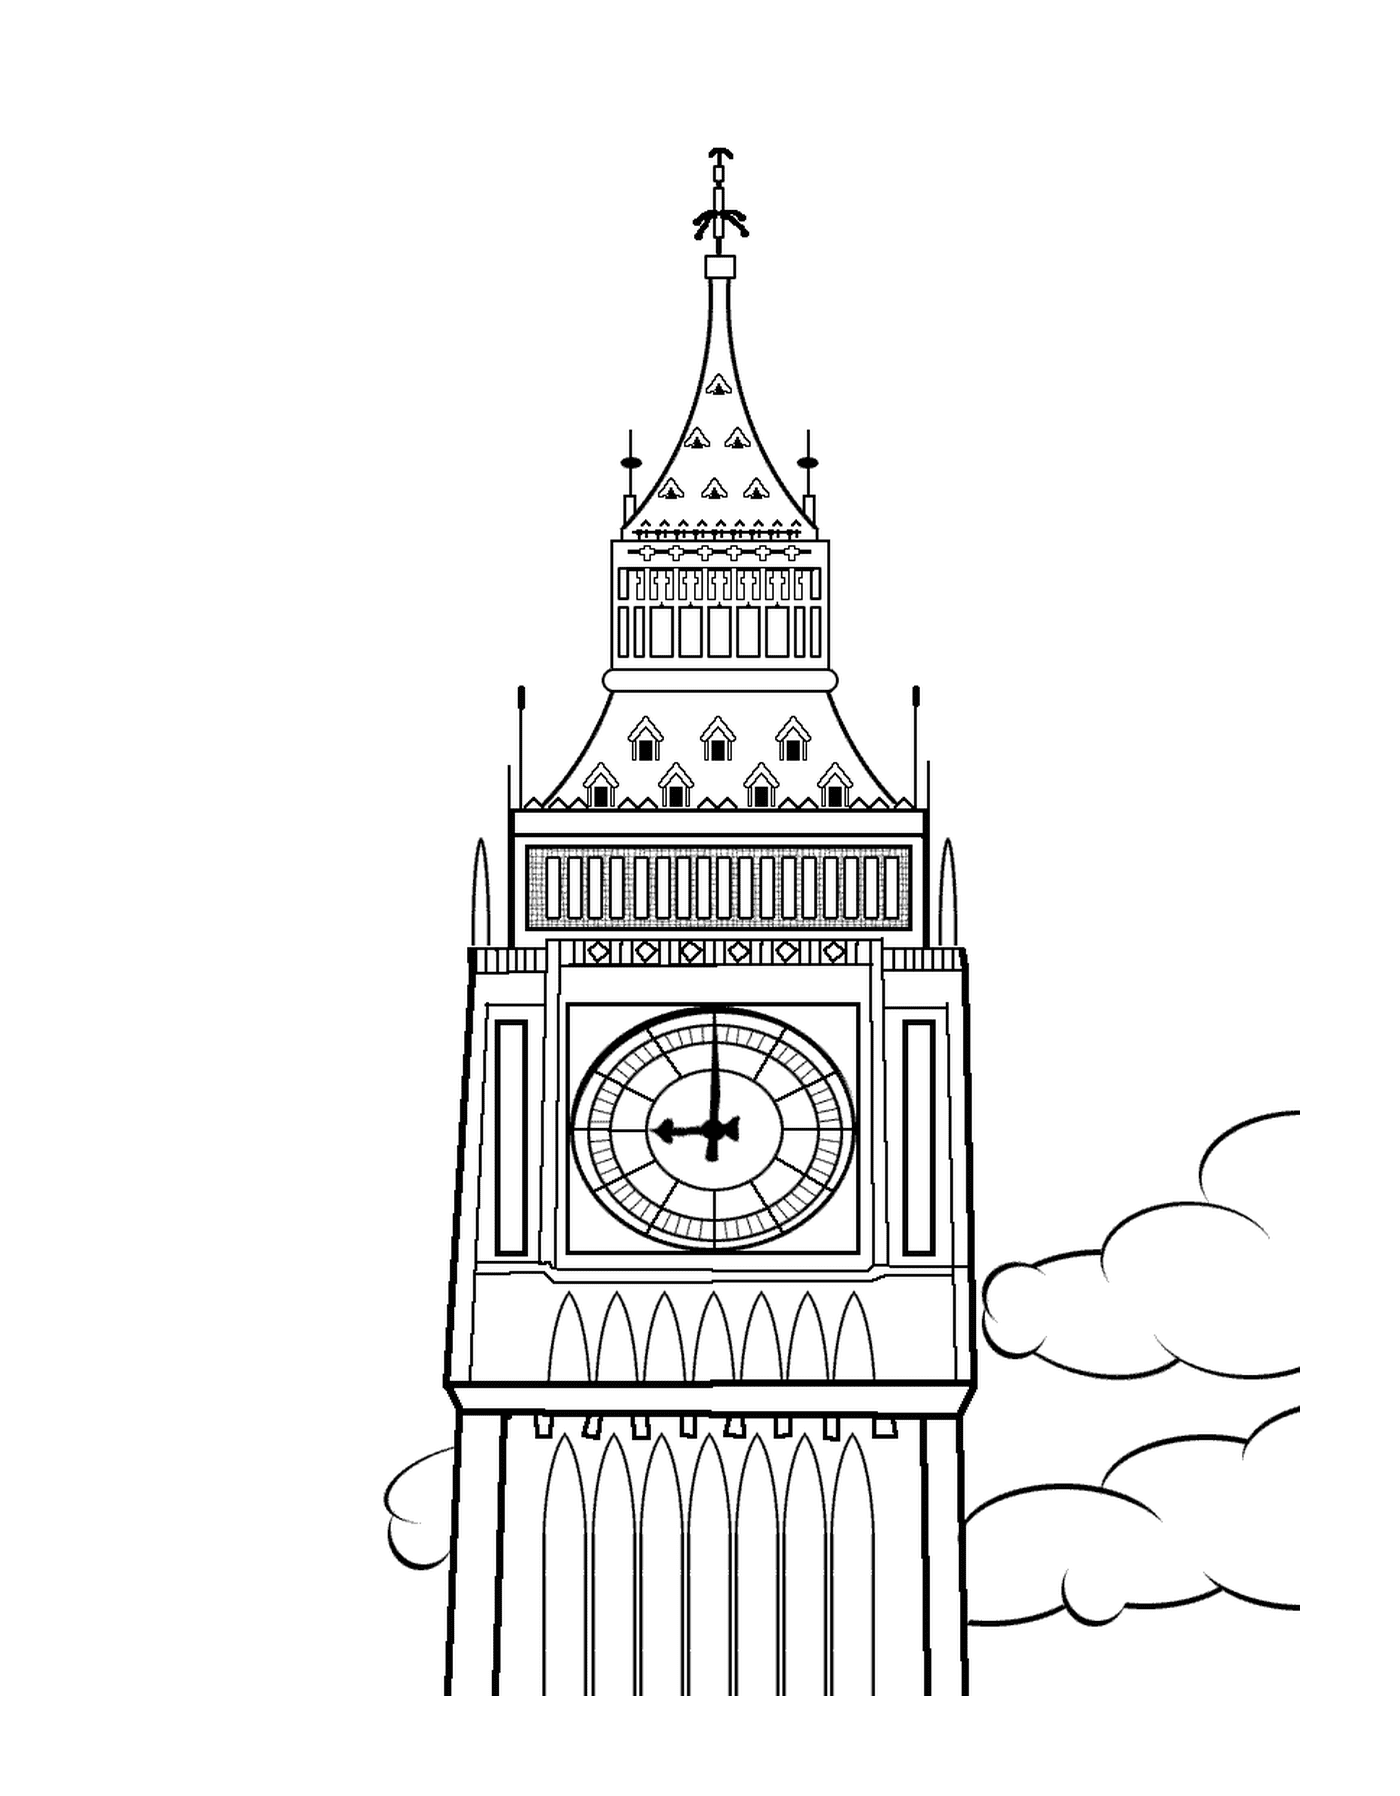 sommet de la tour horloge du palais de Westminster